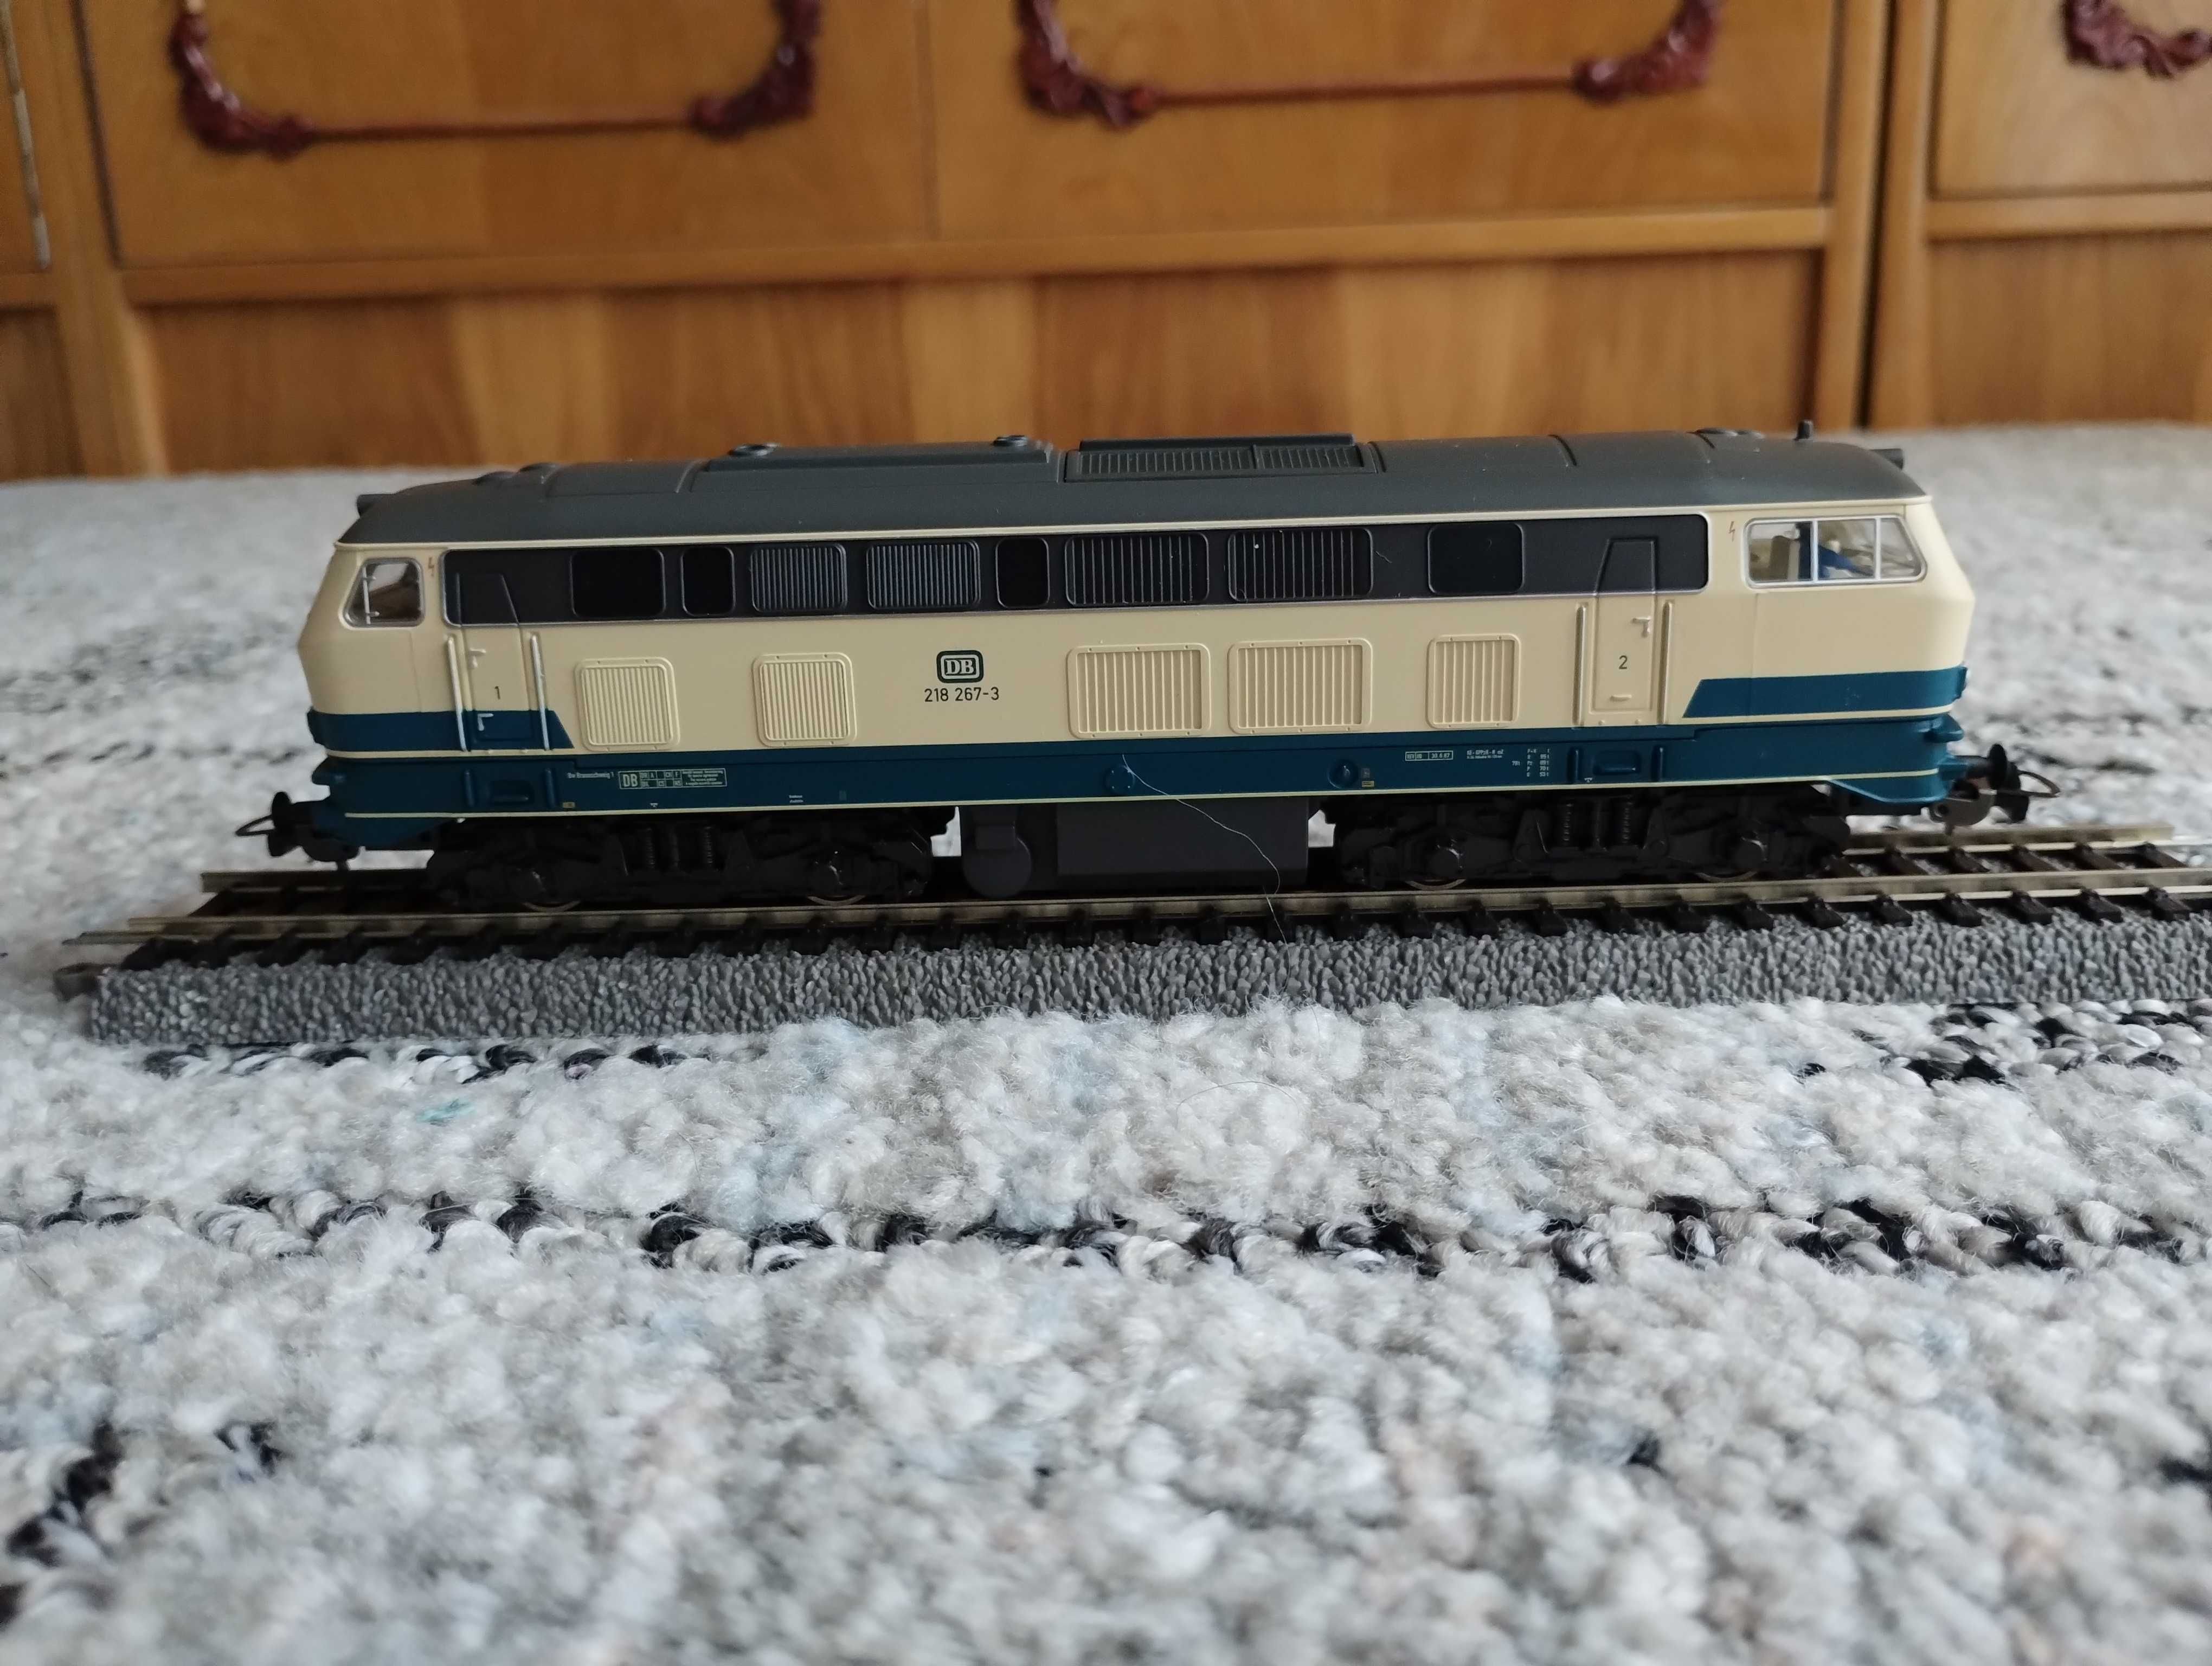 1:87 HO lokomotywa BR218 kolei DB z dekoderem jazdy i dźwięku